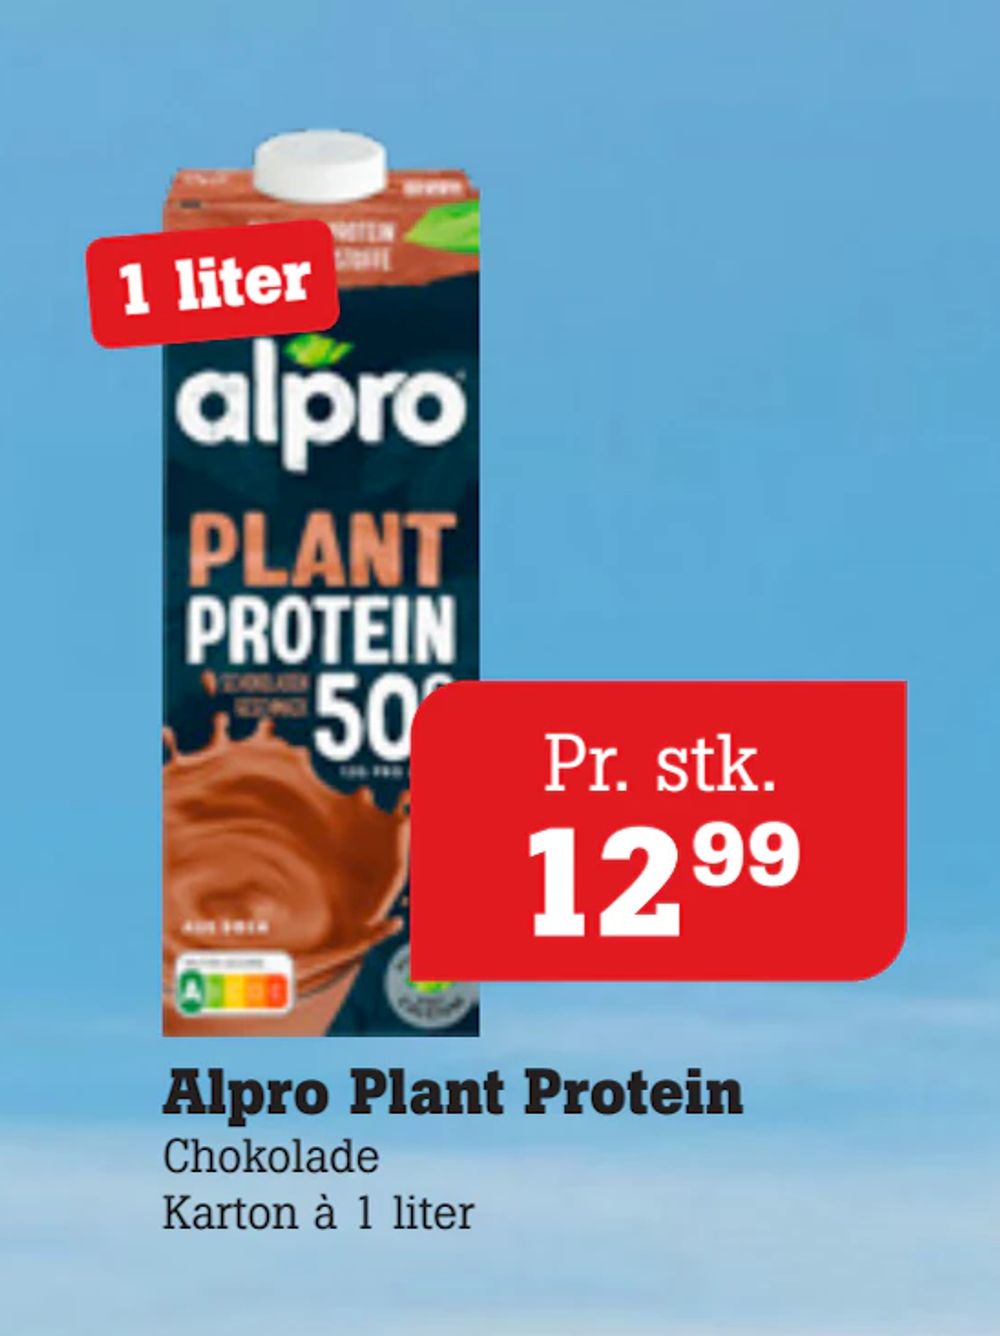 Tilbud på Alpro Plant Protein fra Poetzsch Padborg til 12,99 kr.